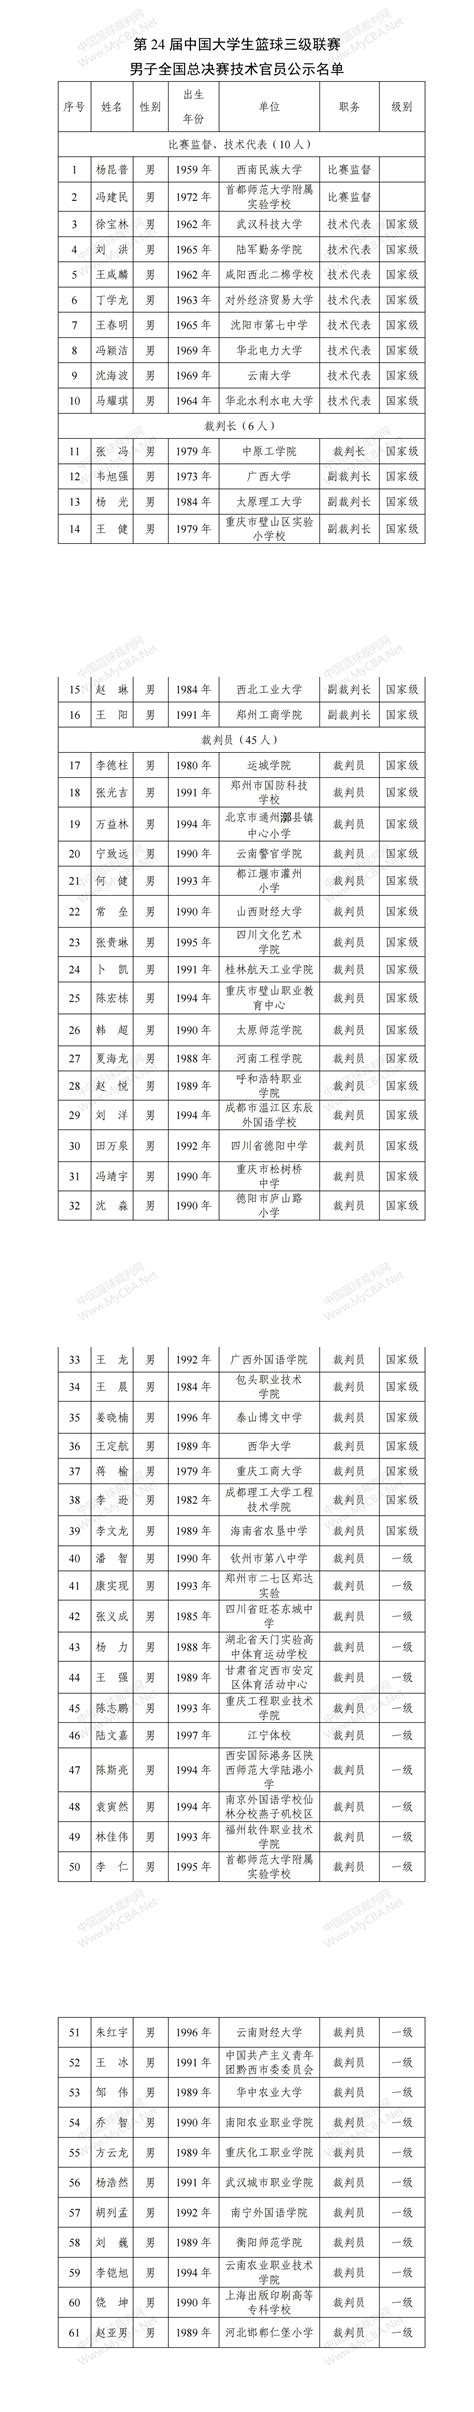 第24届中国大学生篮球三级联赛男子全国总决赛技术官员公示名单